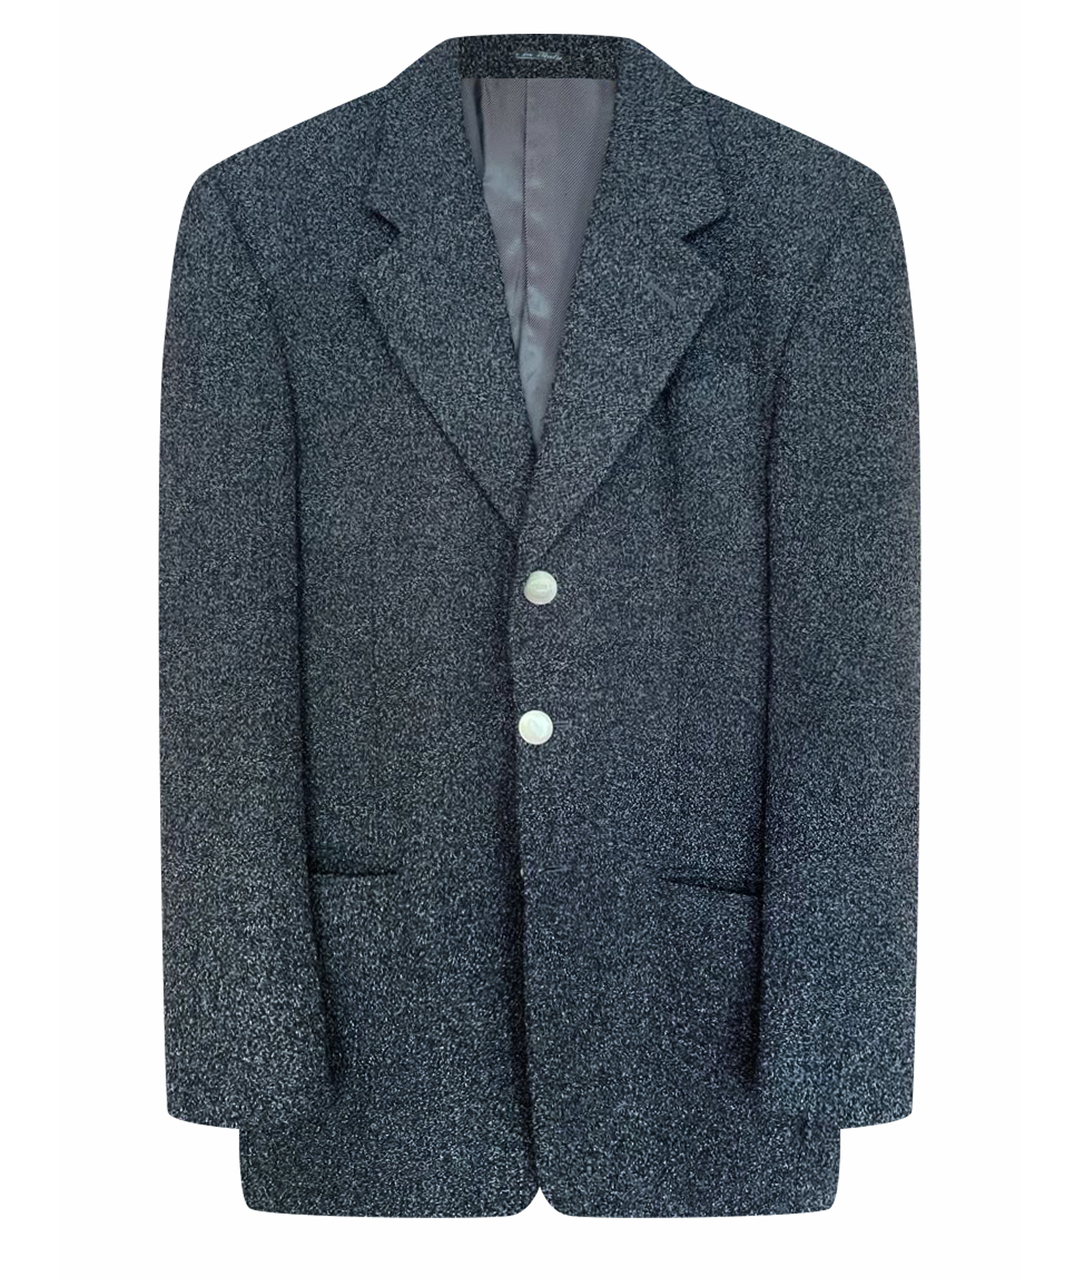 GIANFRANCO FERRE VINTAGE Антрацитовый шерстяной пиджак, фото 1